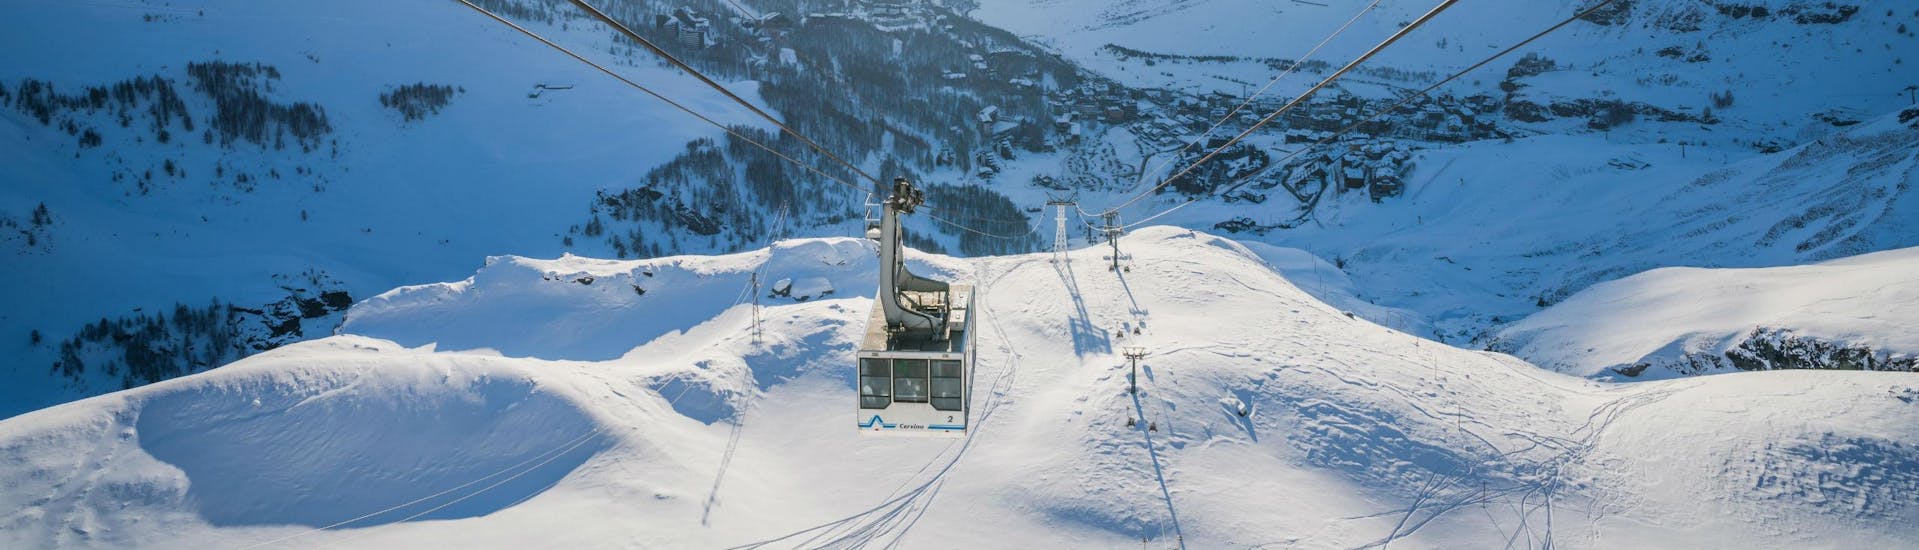 Ein Bild einer Seilbahn im italienischen Skigebiet Cervinia, wo Besucher bei den von den örtlichen Skischulen angebotenen Skikursen das Skifahren lernen können.